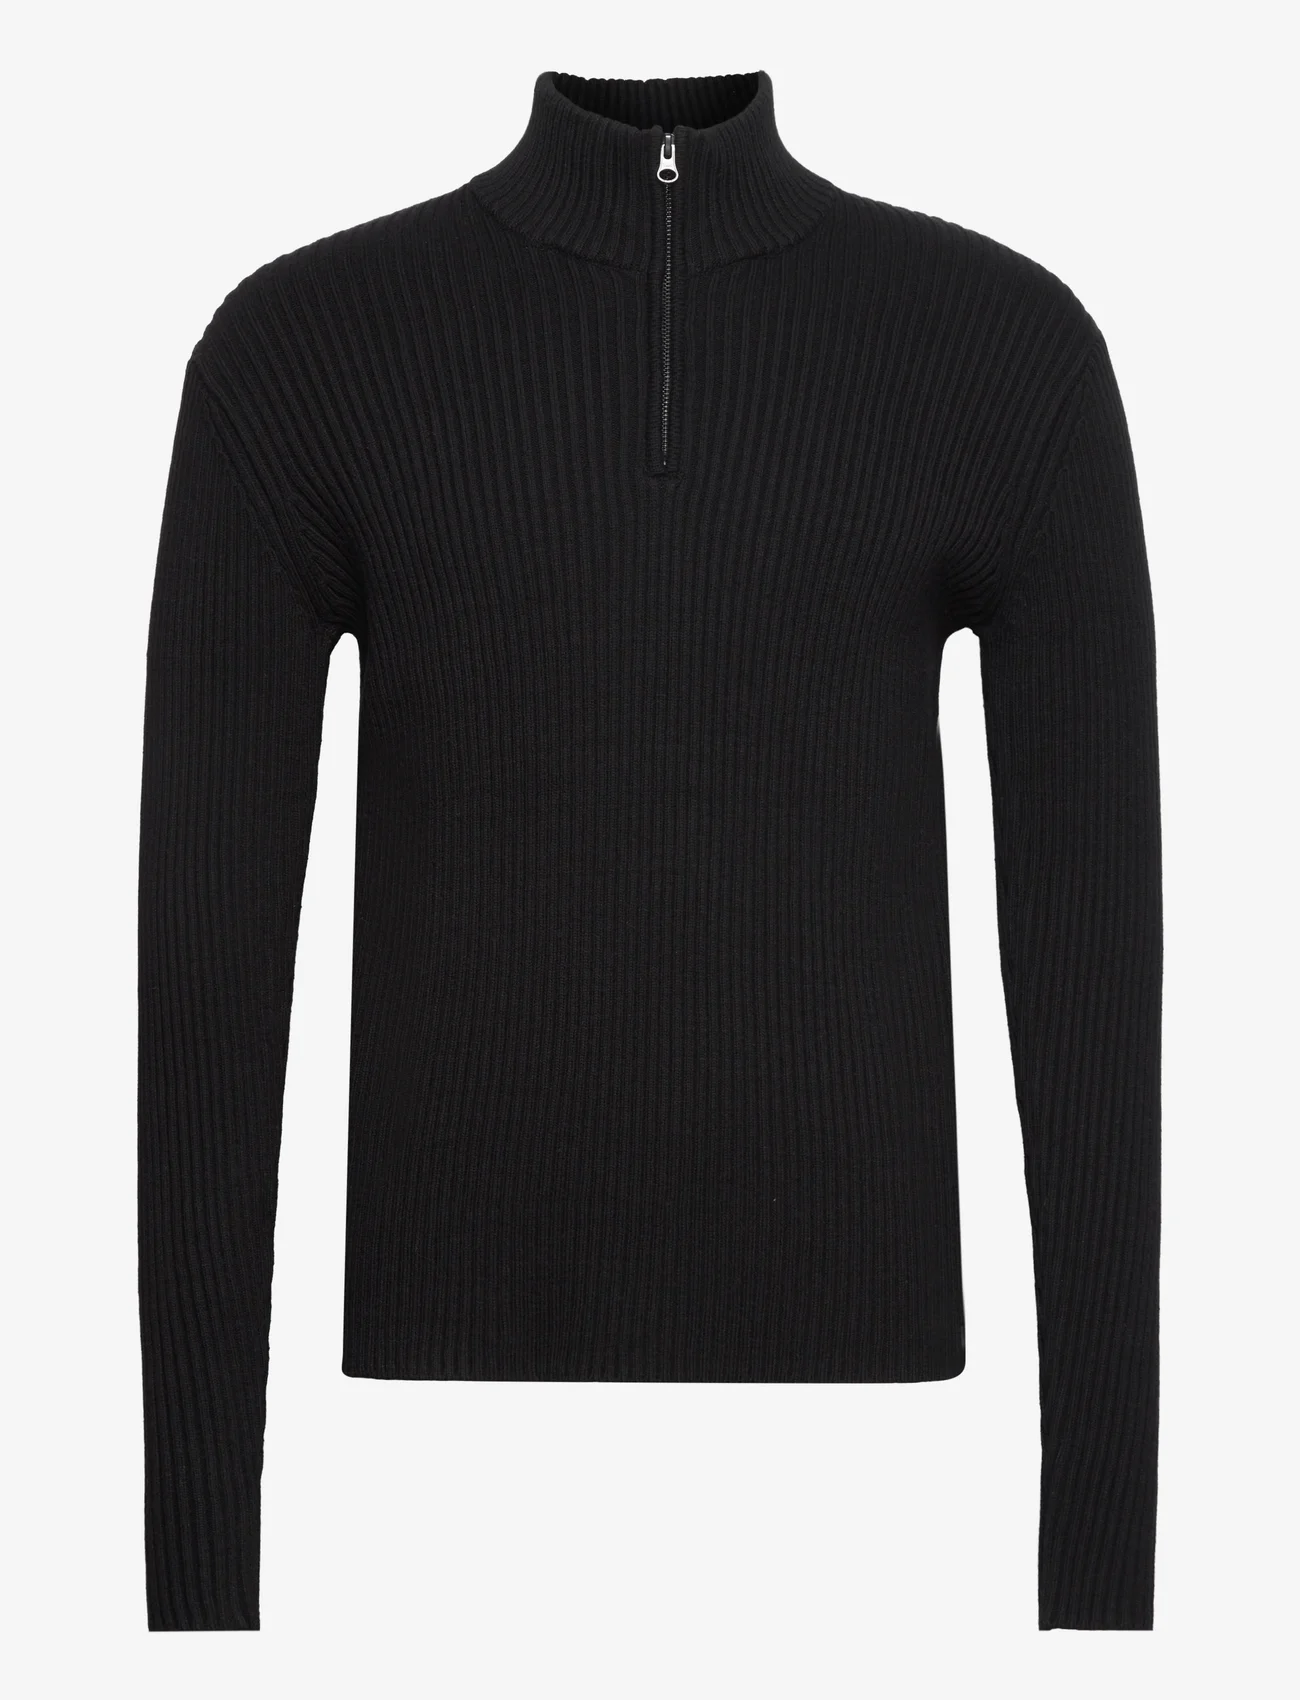 Bruuns Bazaar - SimBBBilly zip knit - herren - black - 0